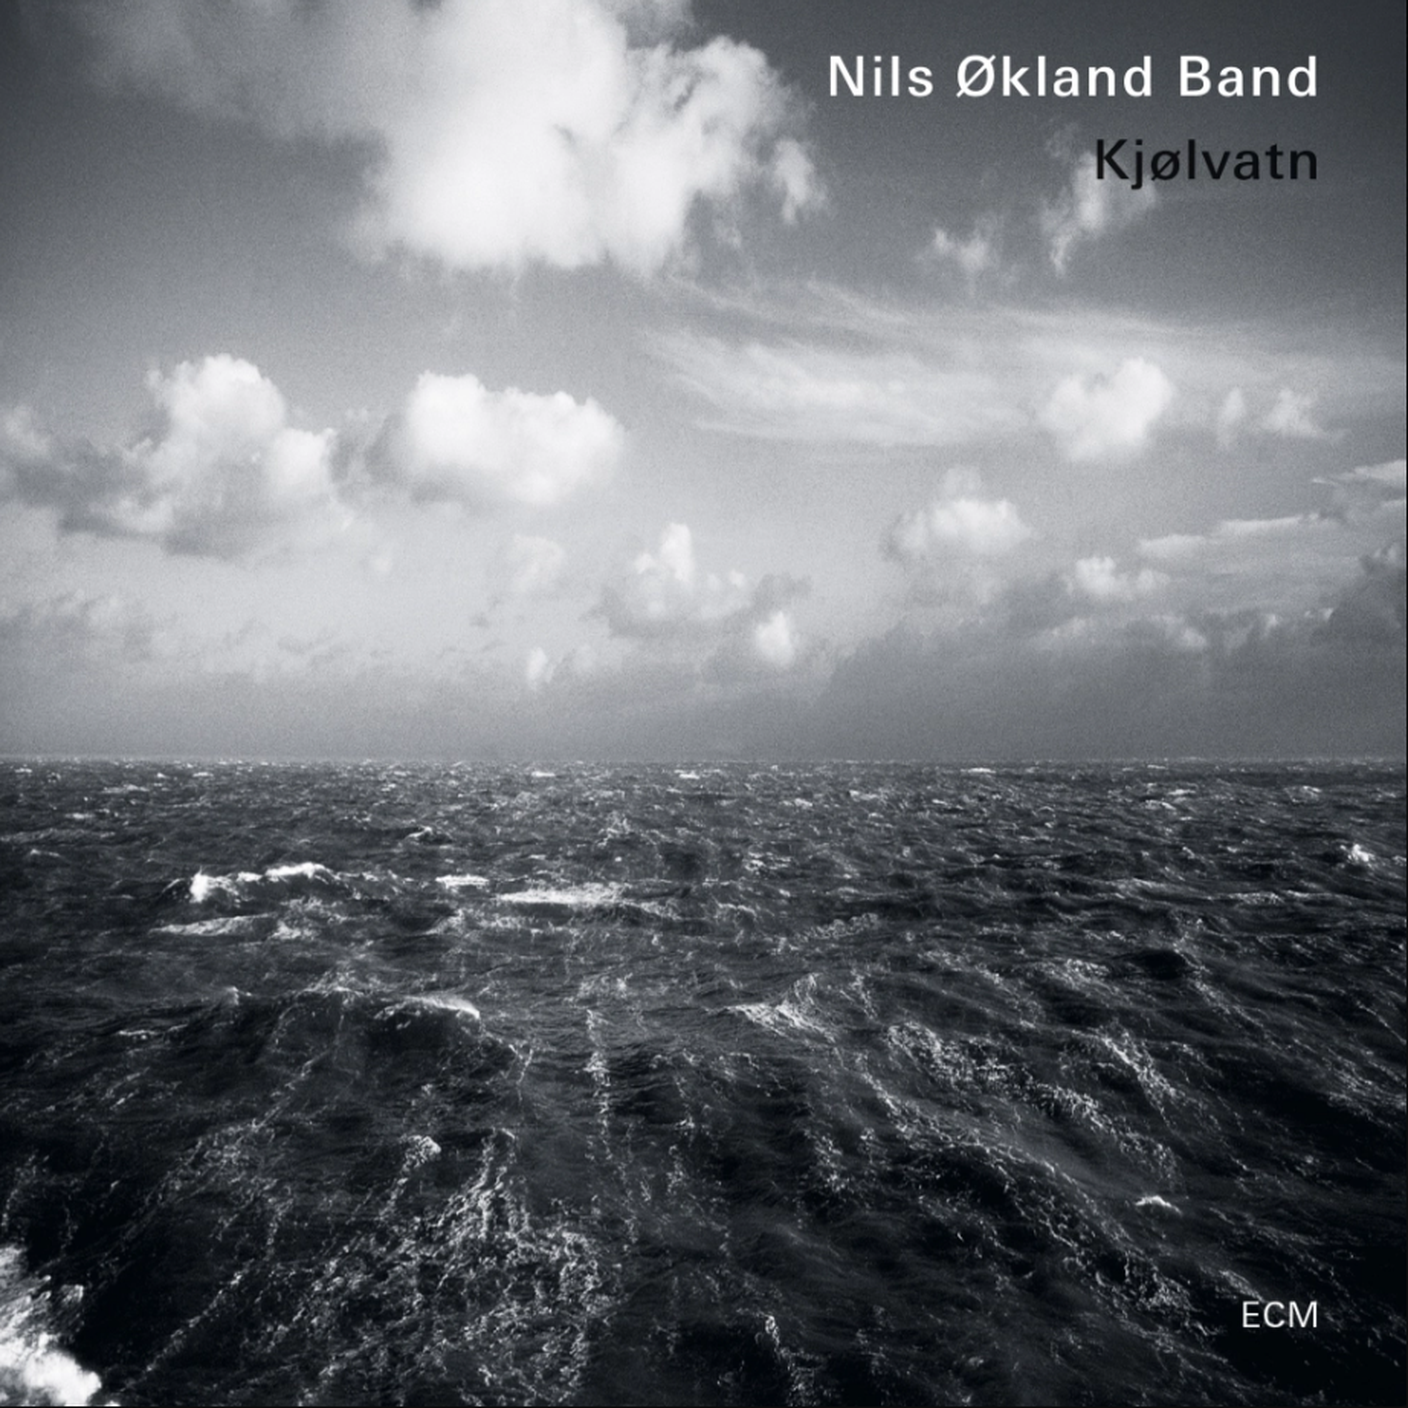 "Amstel" di Nils Økland Band, ECM (dettaglio di copertina)